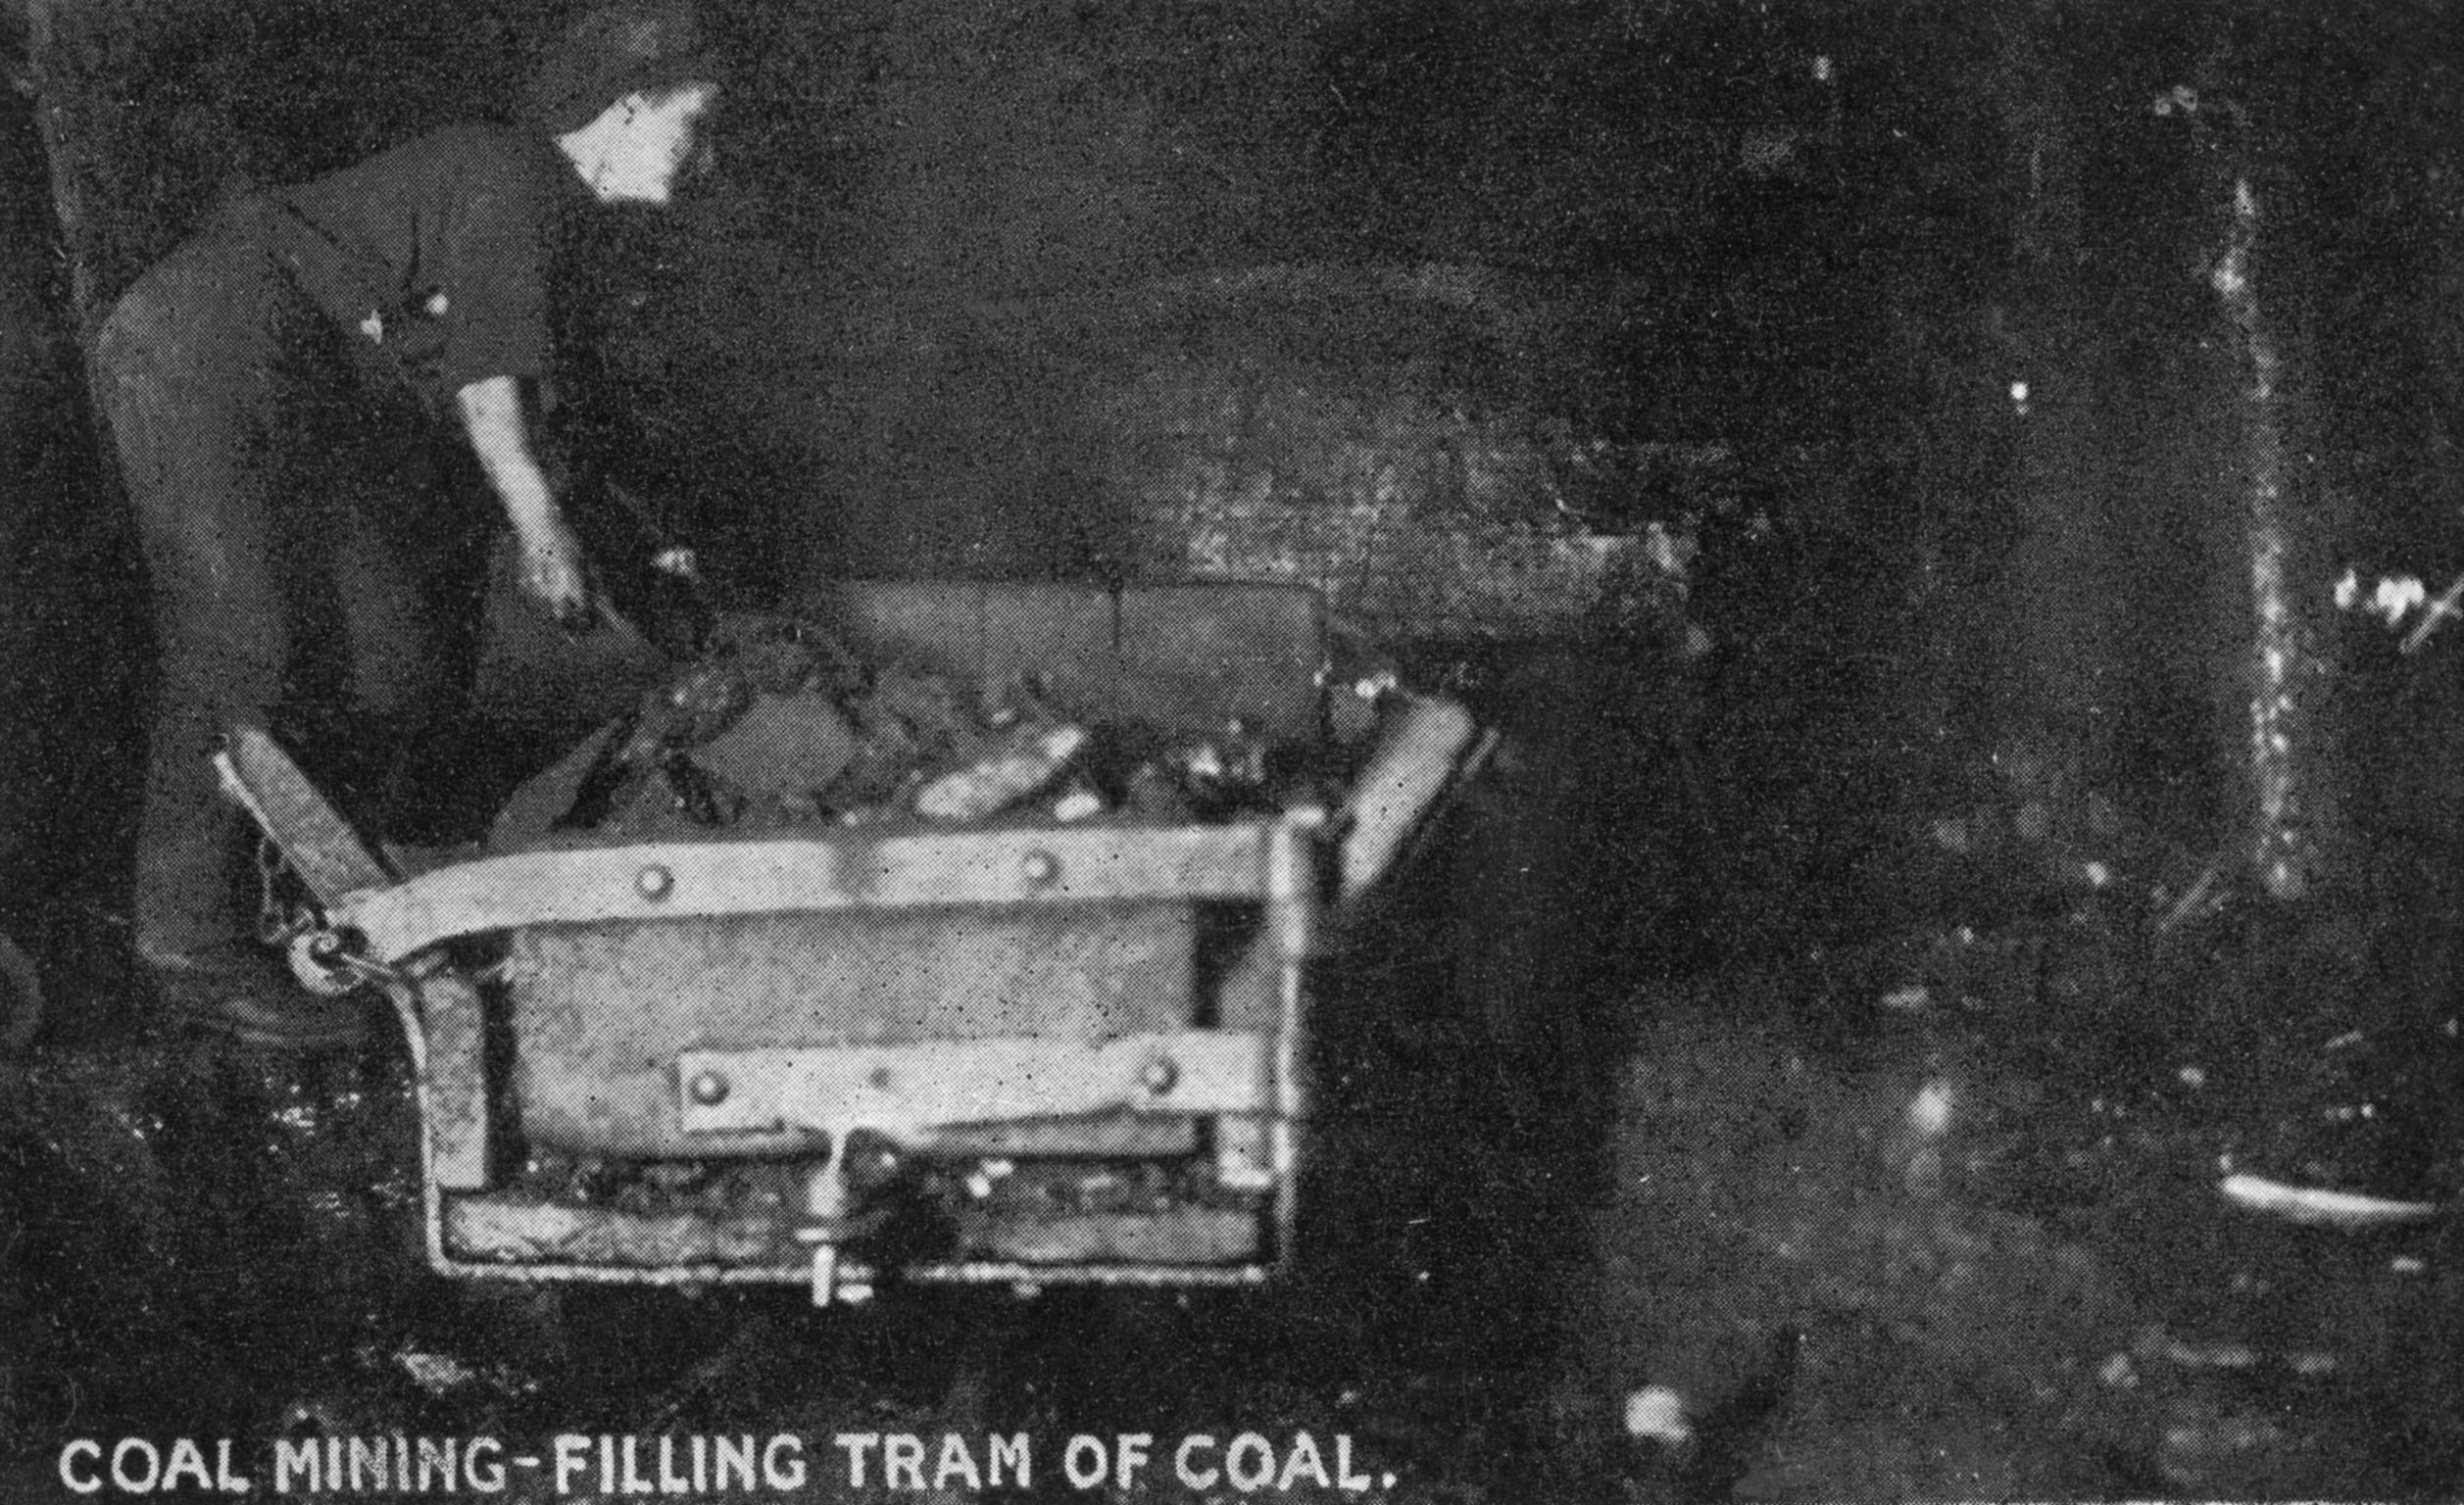 Coal Mining-Filling a Tram of Coal (postcard)